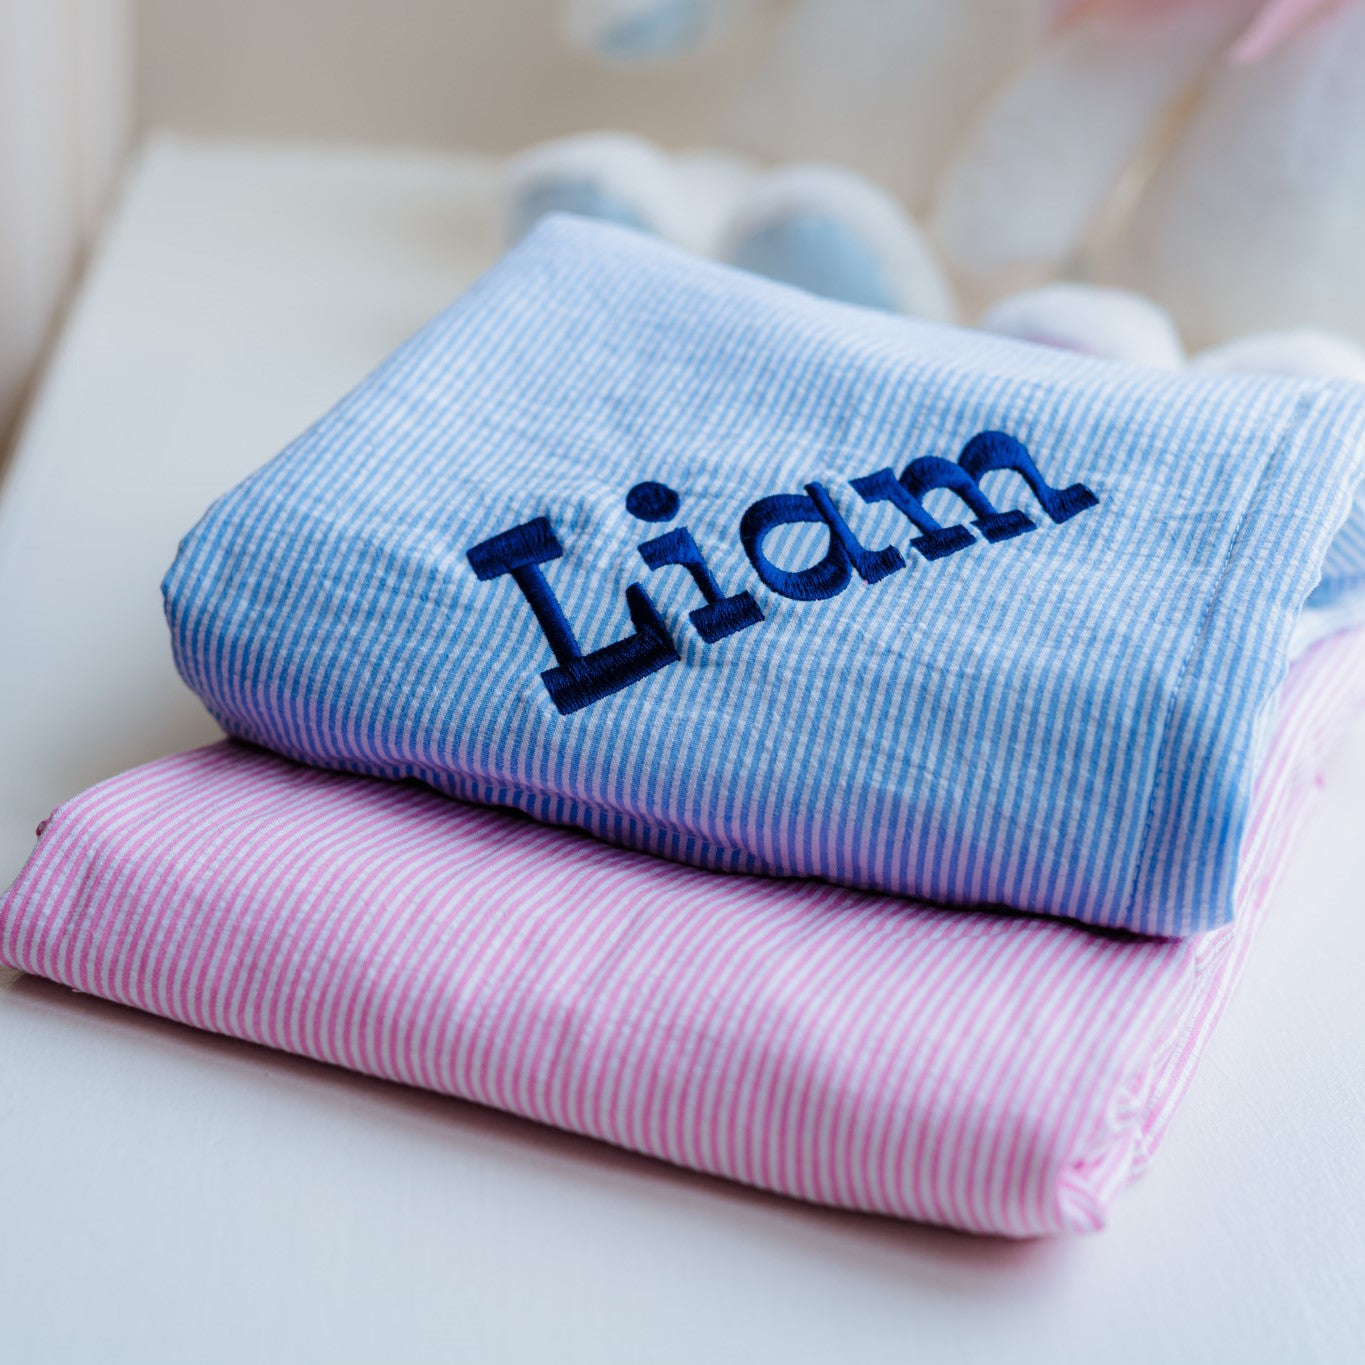 Personalized Seersucker Baby Blanket - Assorted Colors